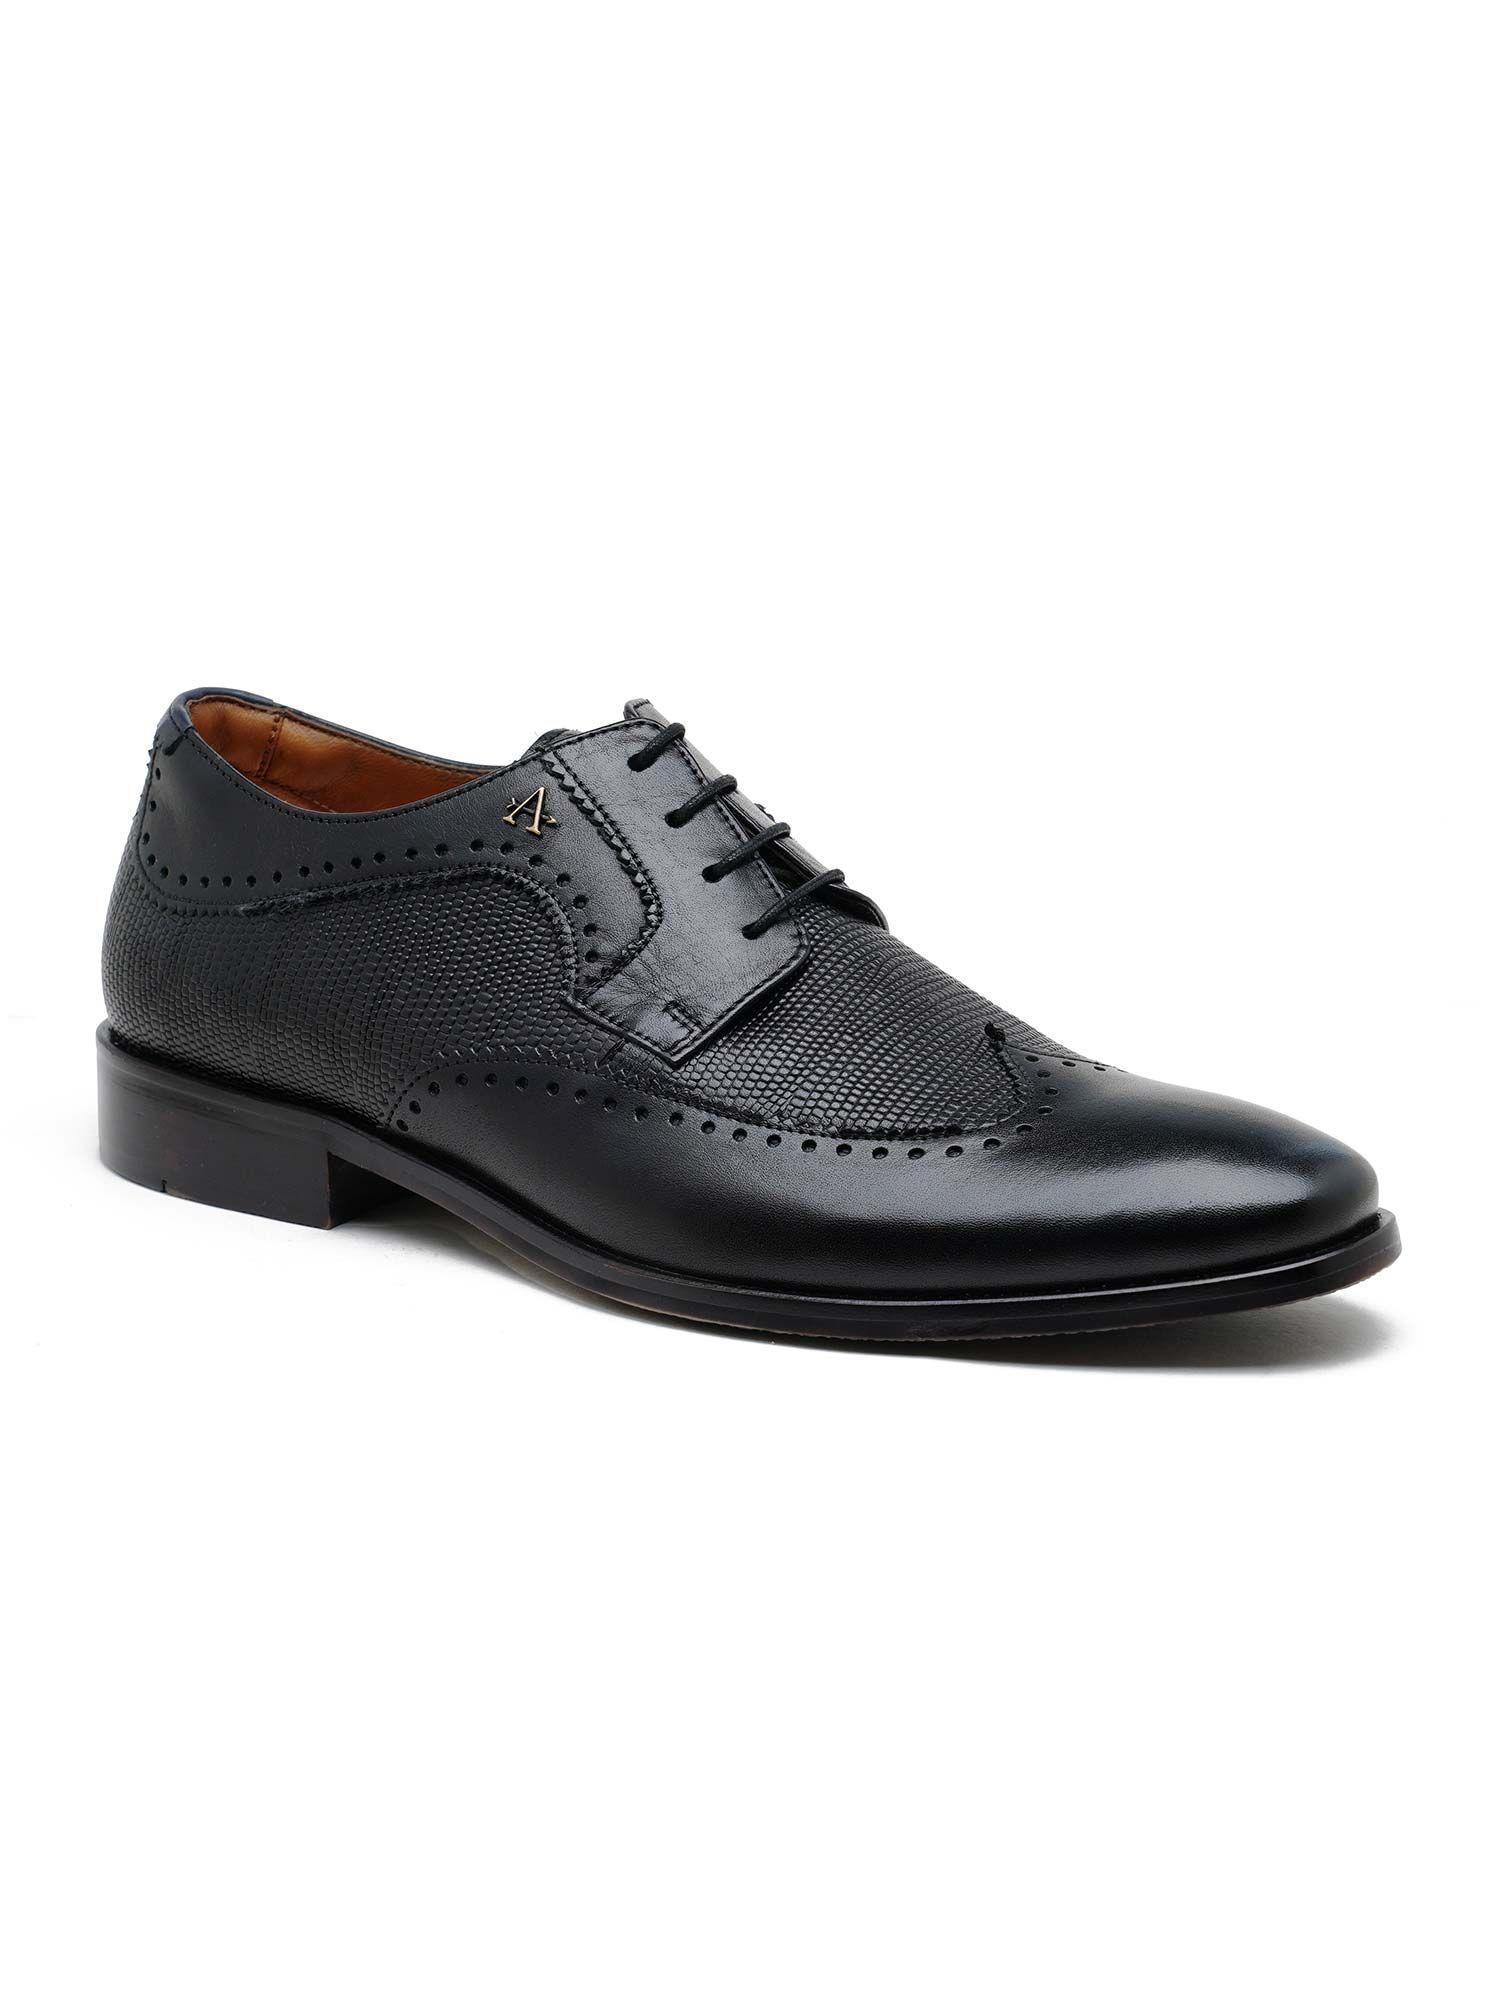 men-boulder-black-formal-lace-up-shoes